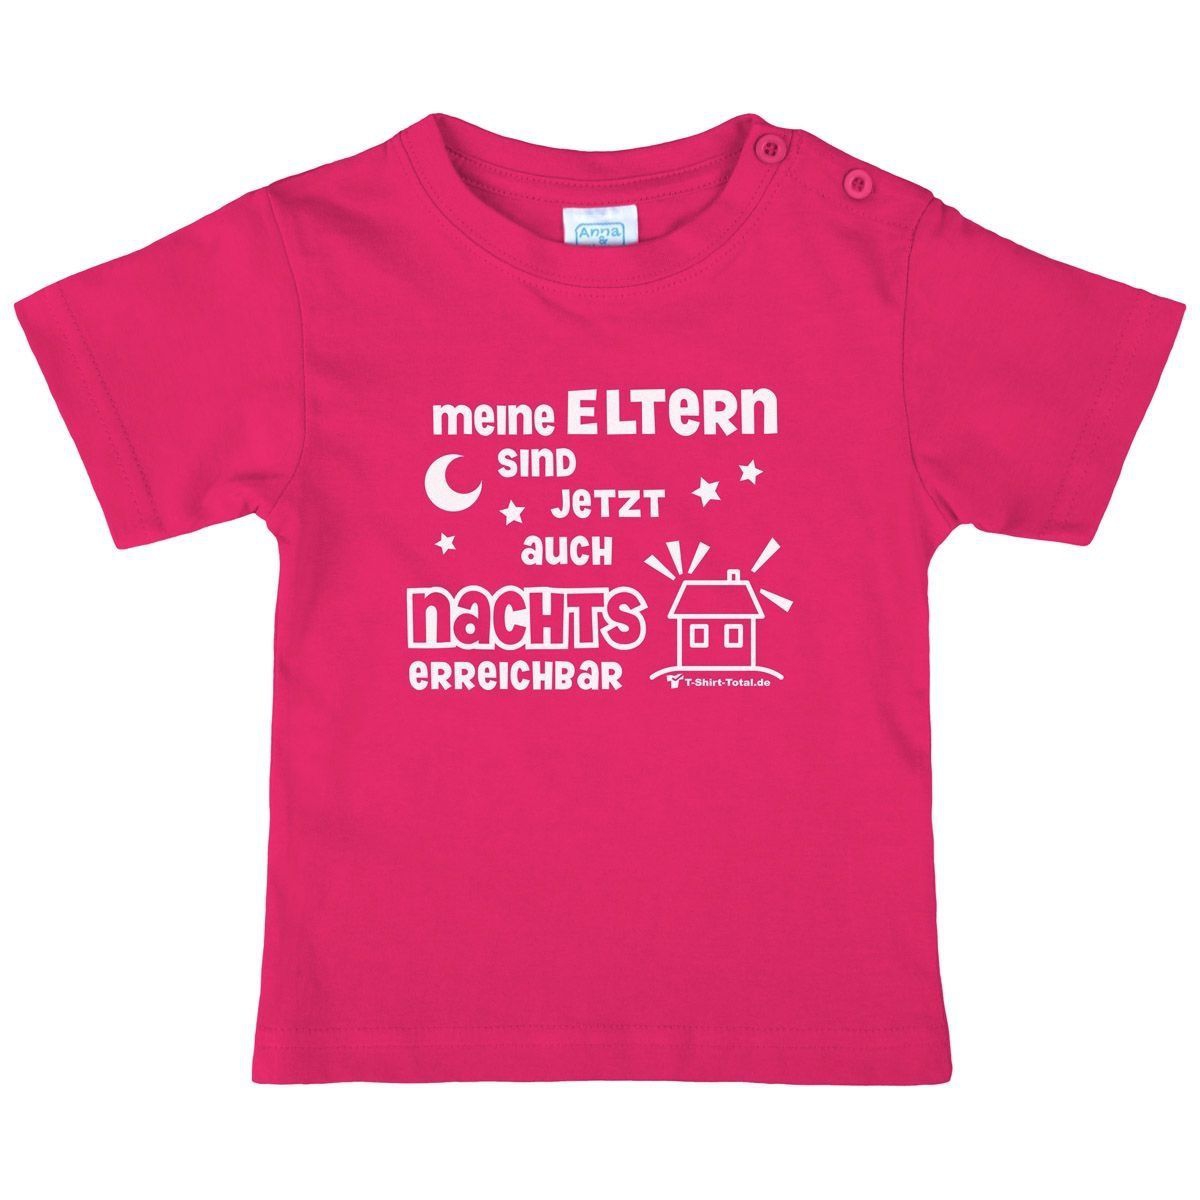 Eltern nachts erreichbar Kinder T-Shirt pink 56 / 62